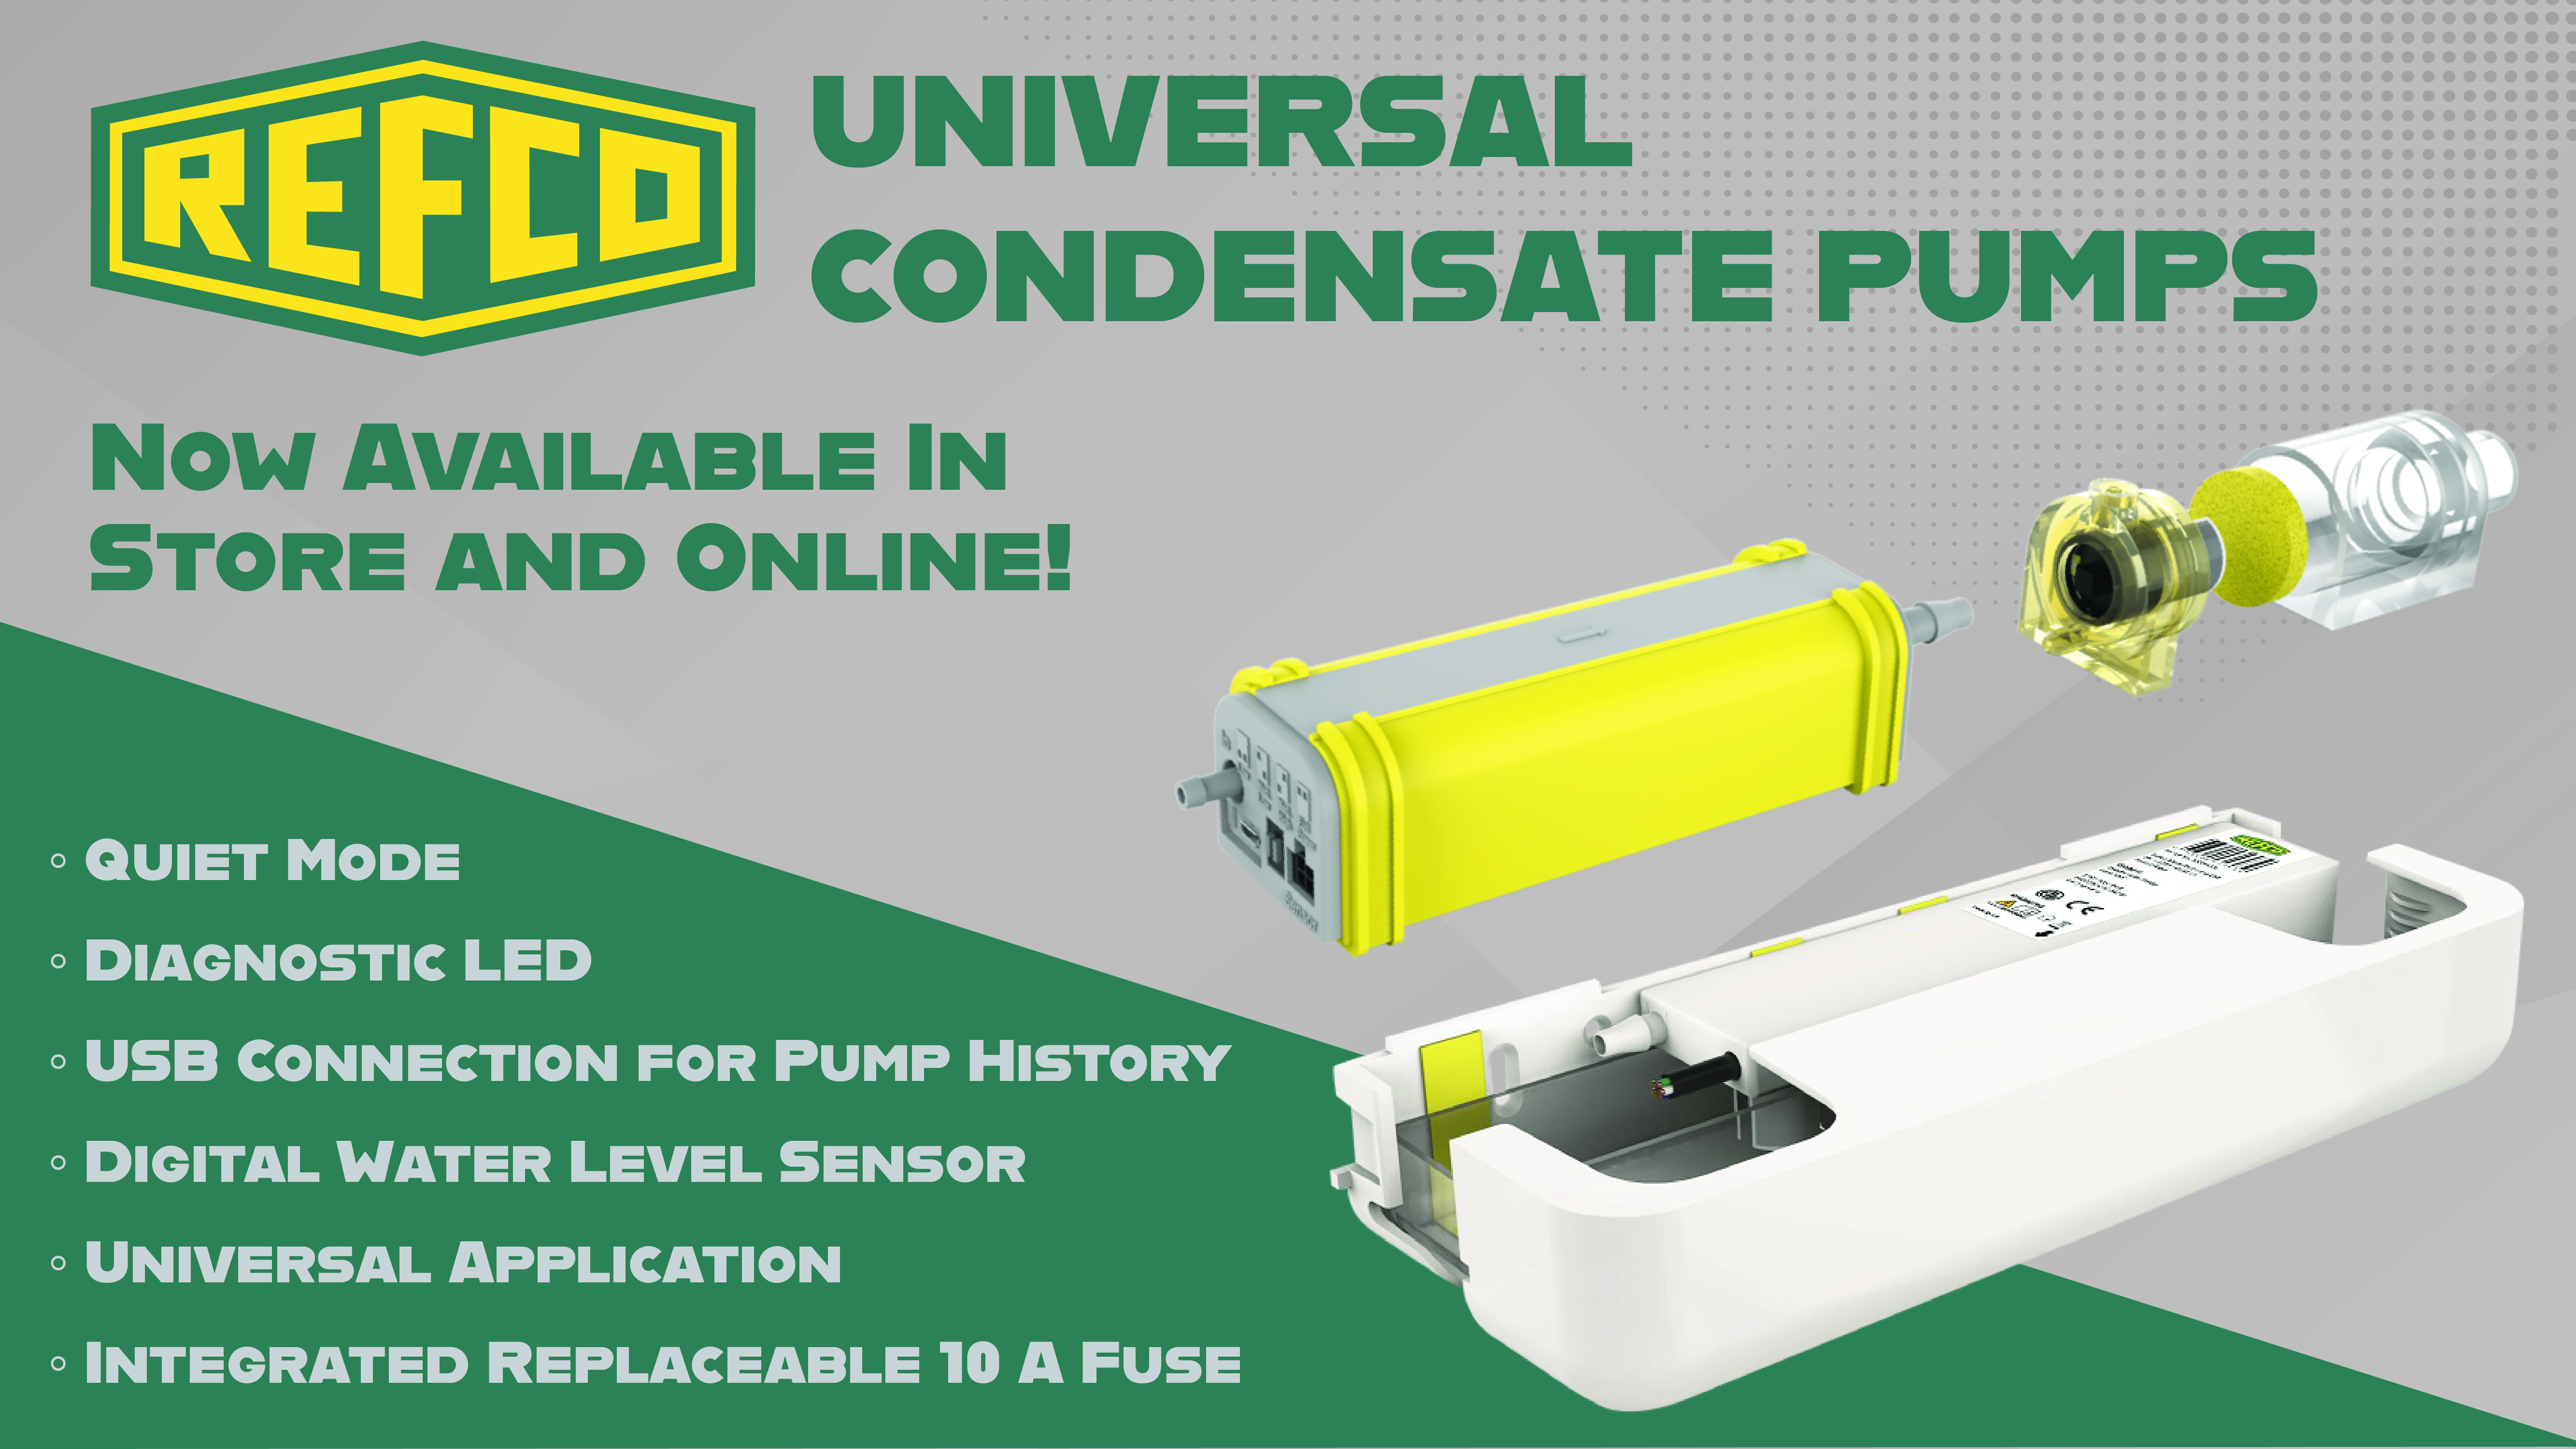 Refco Universal Condensate Pumps